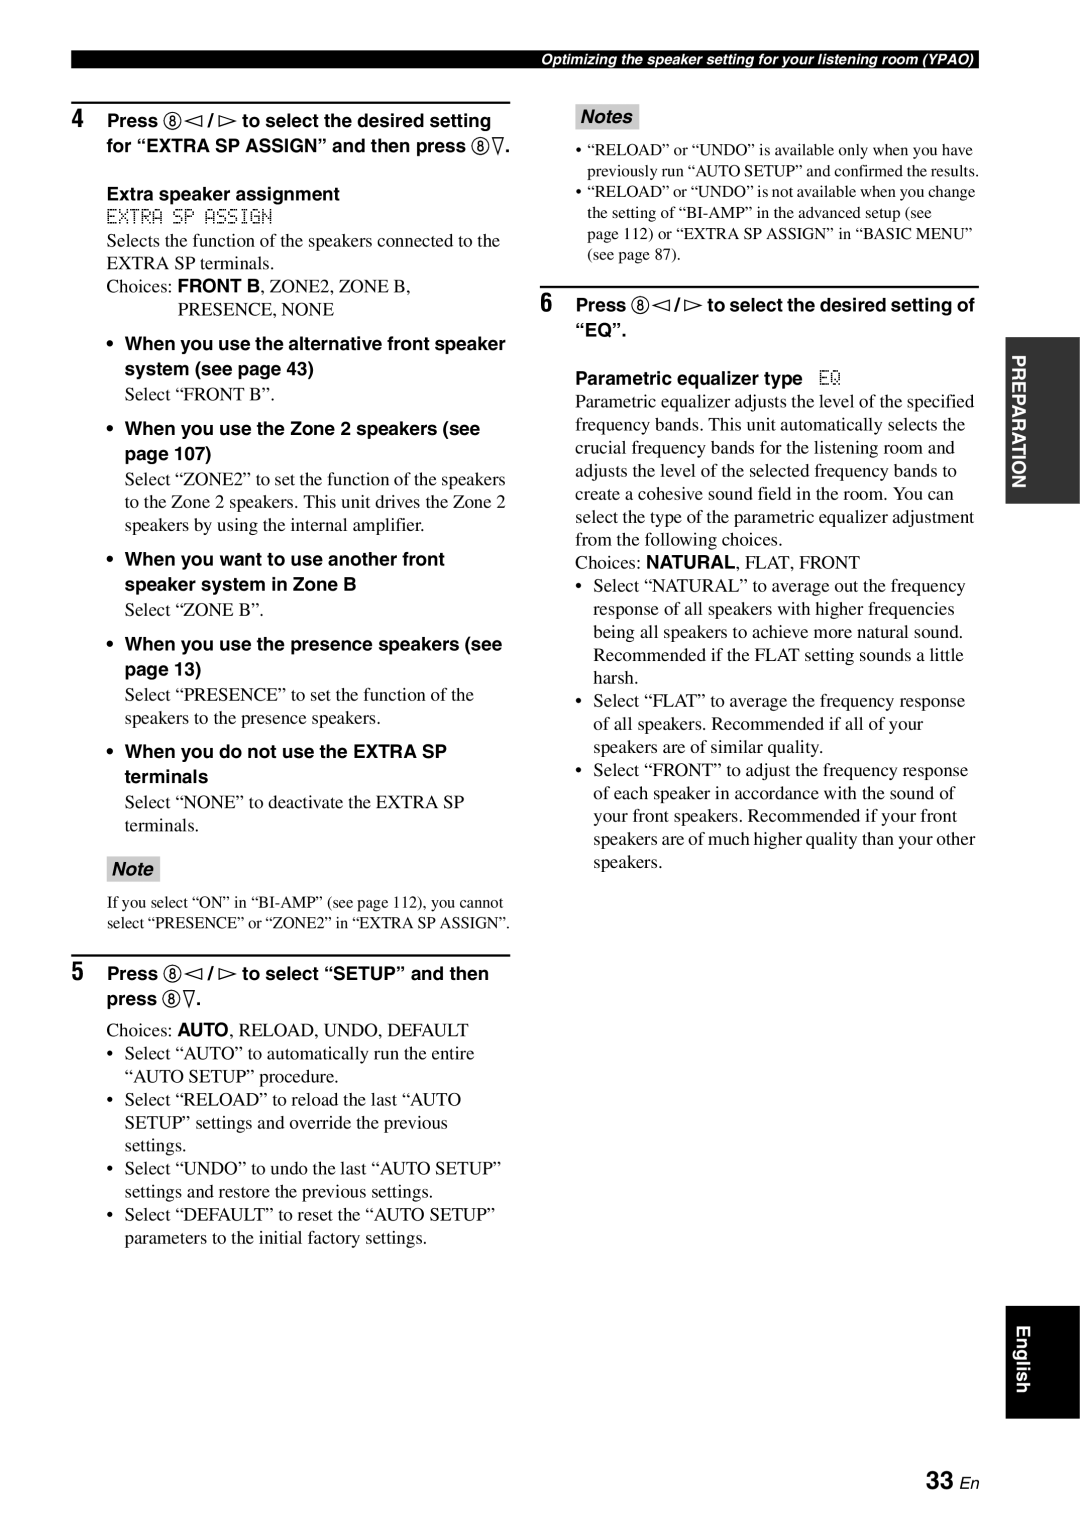 Yamaha RX-V863 owner manual 33 En, Notes 